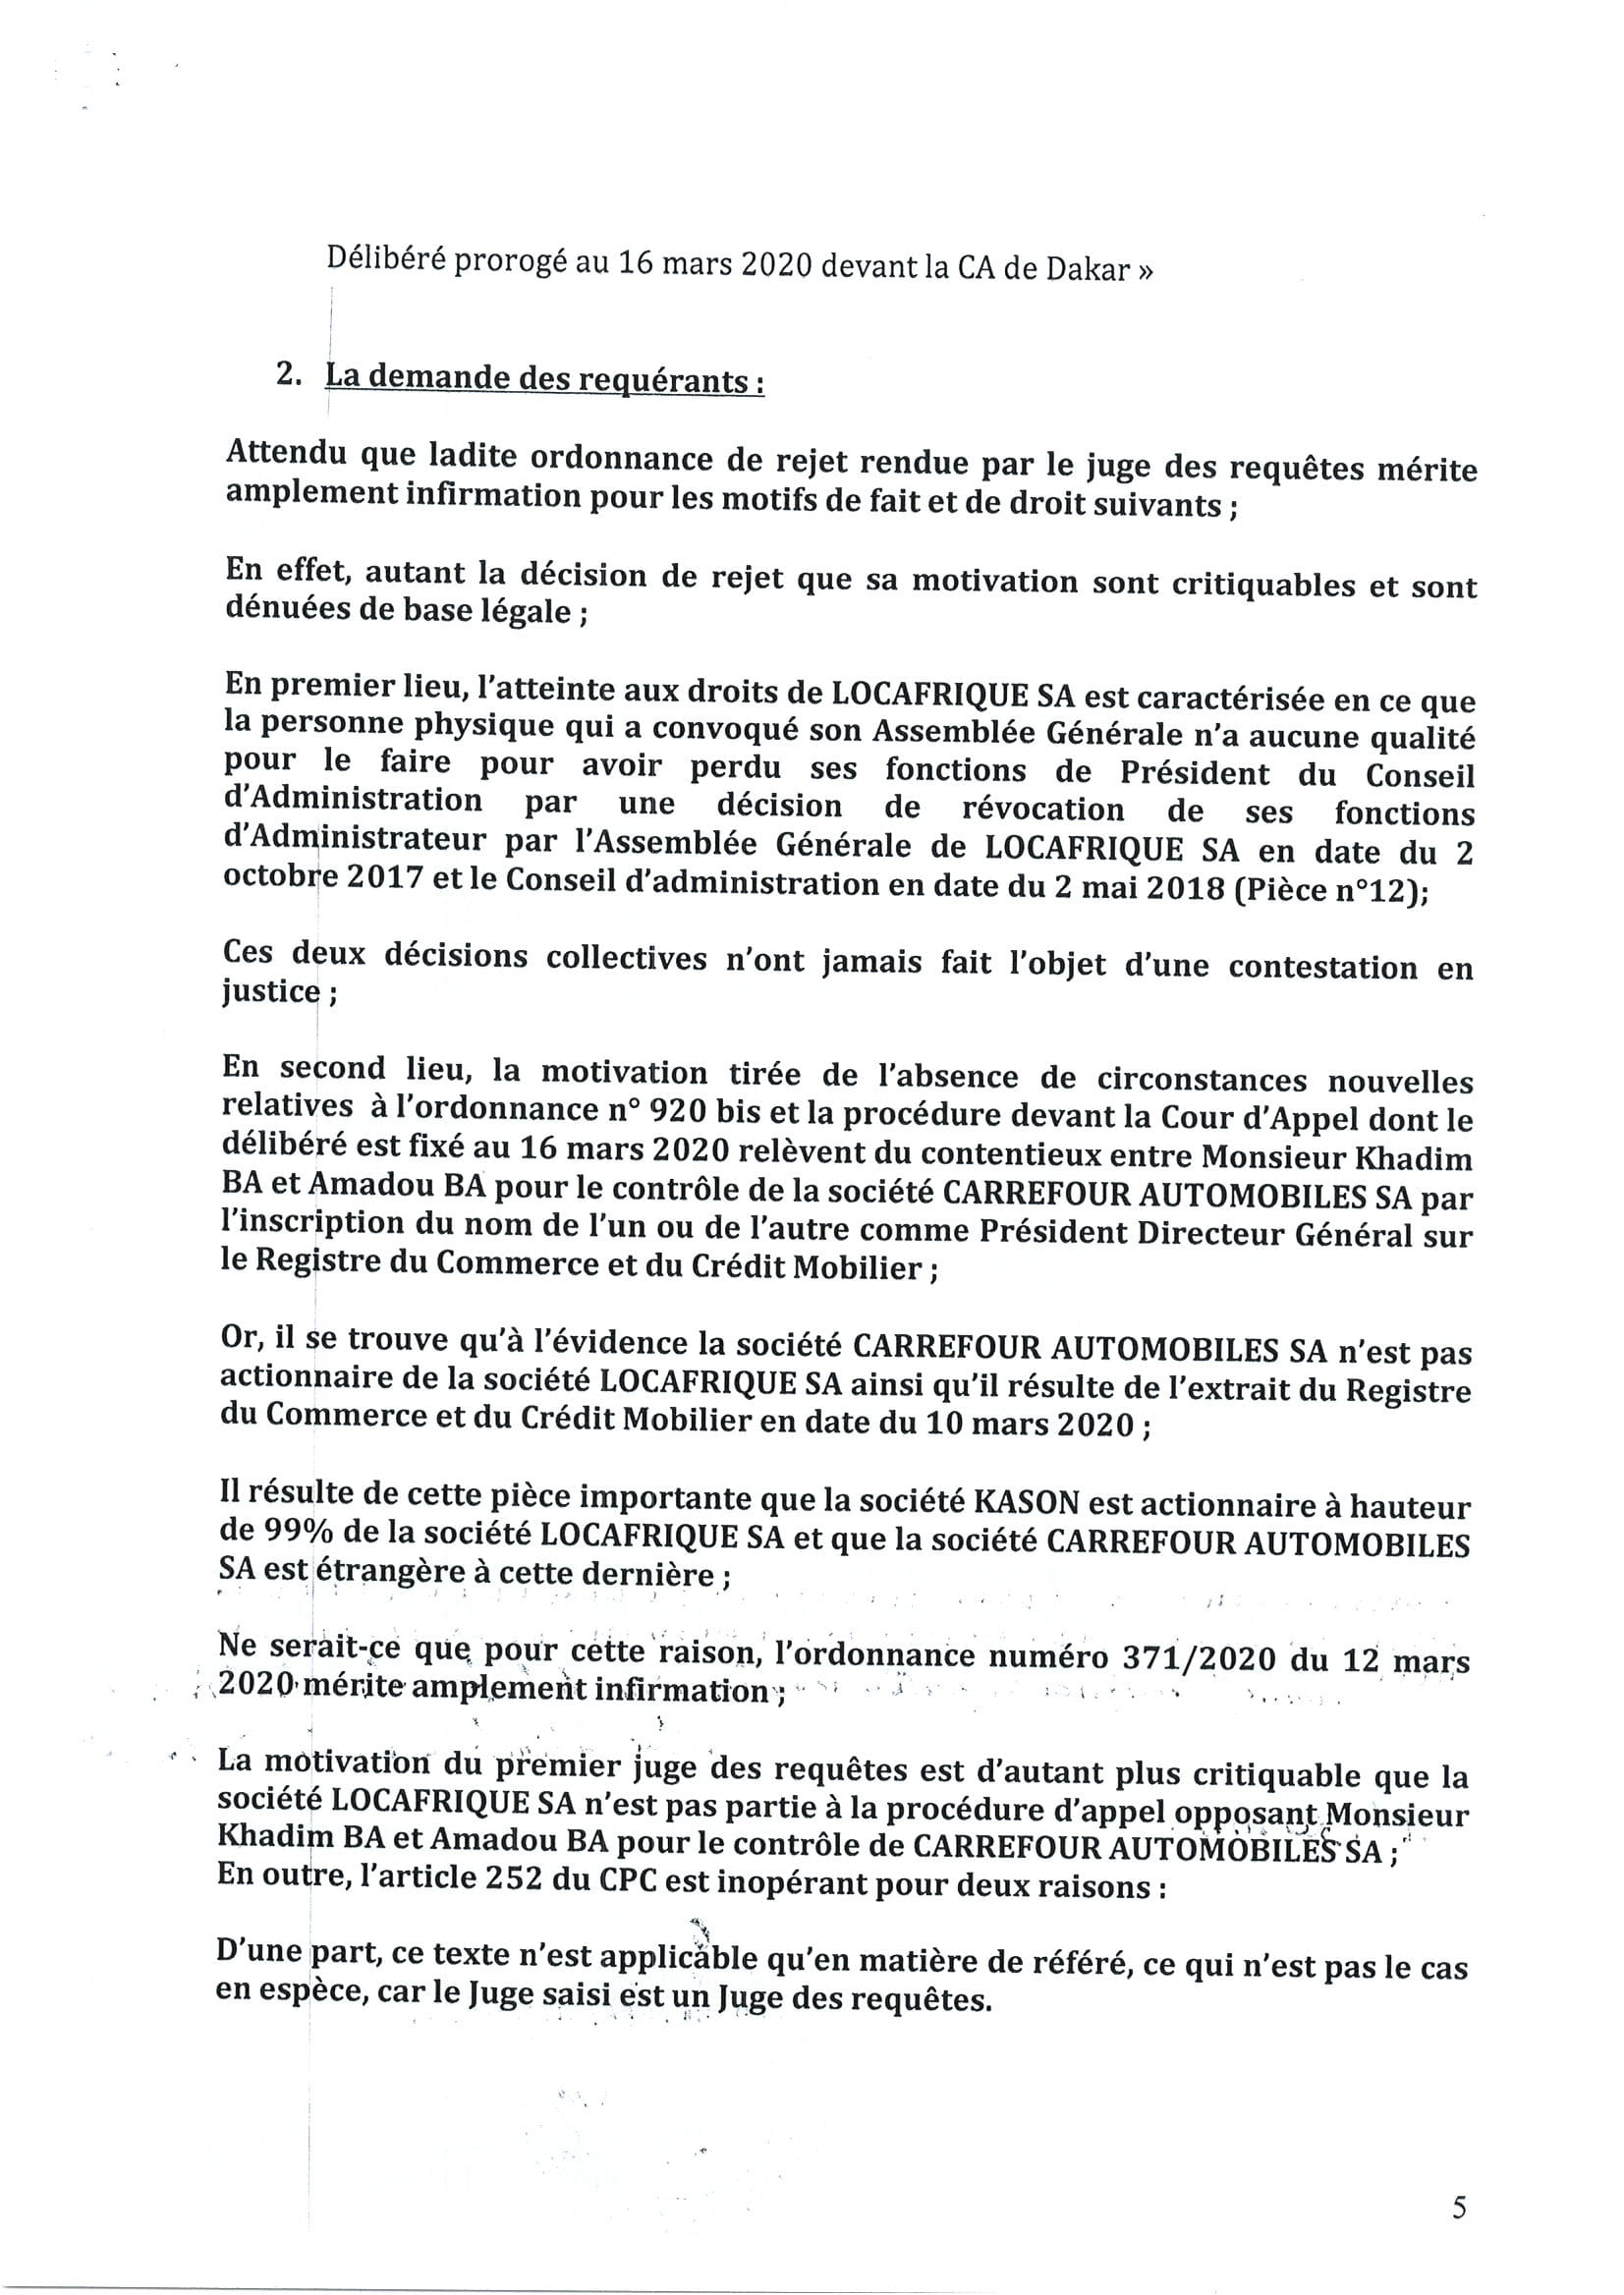 Gros scandale à la Sar entre le Pca, le dg et Amadou Ba (documents)